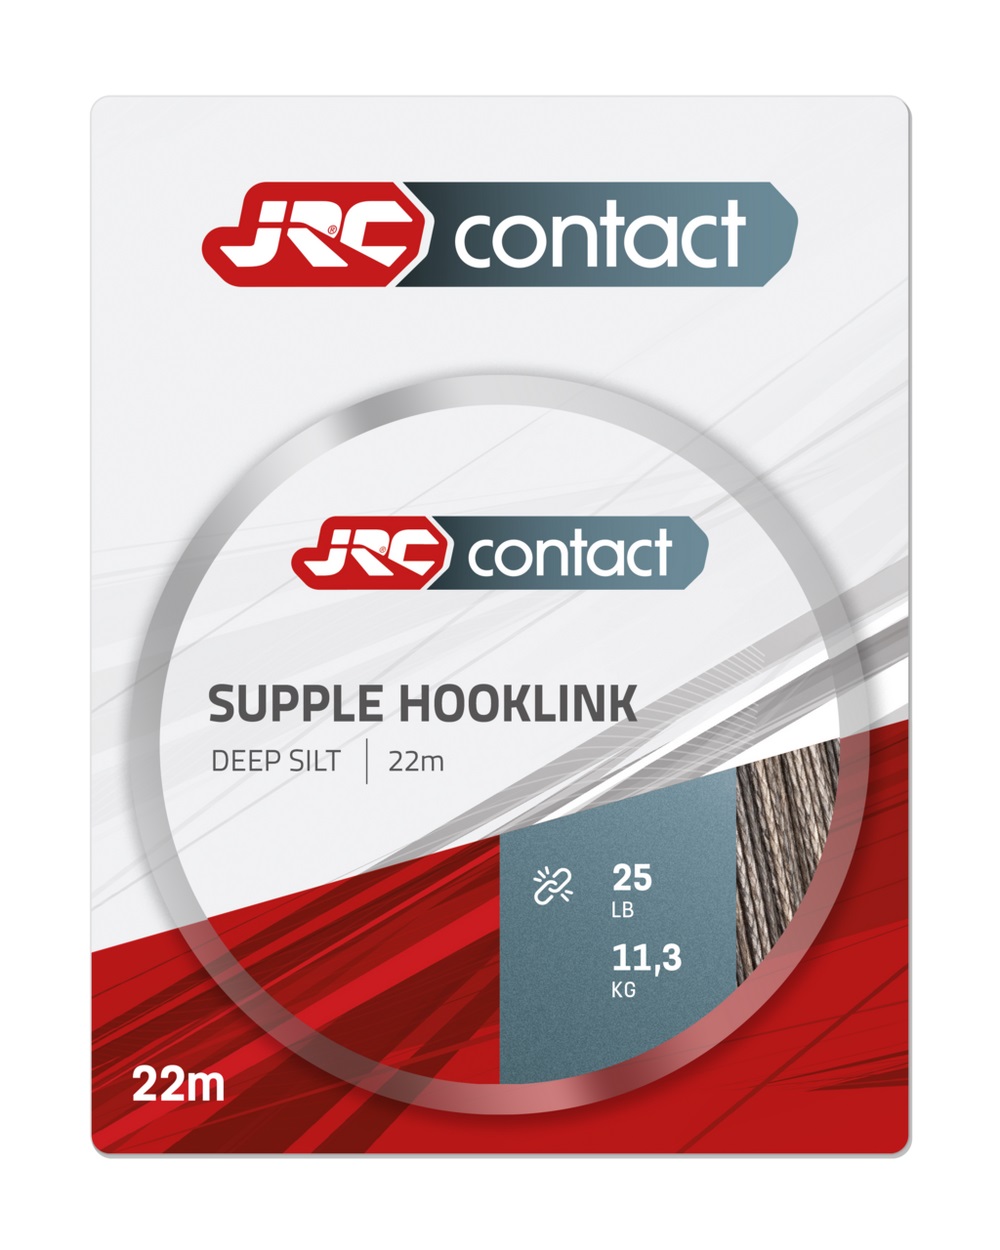 JRC Contact Supple Hooklink Deep Silt Rig material (22m)